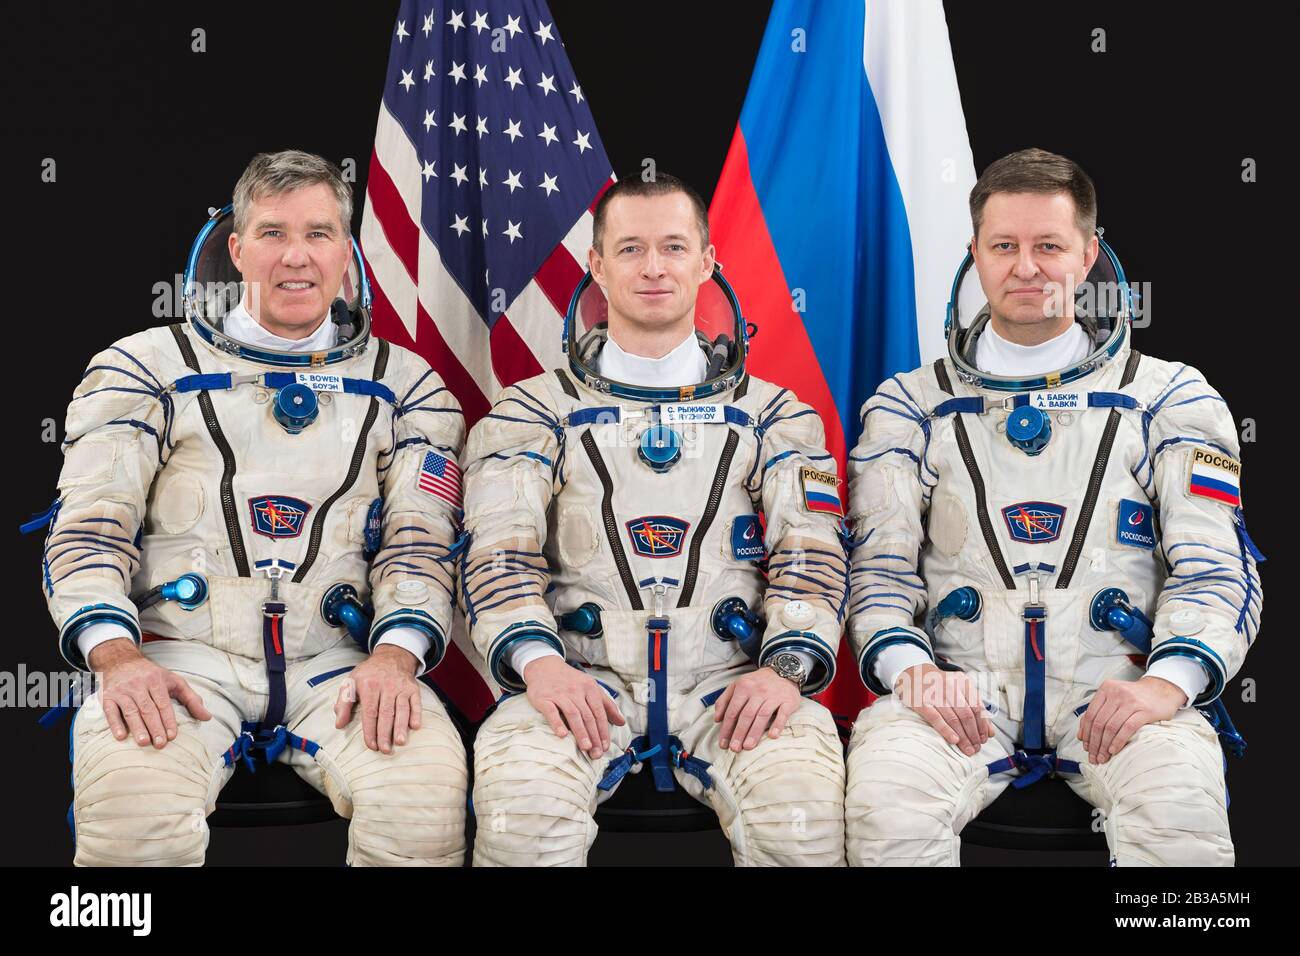 STERNENSTADT, RUSSLAND - 18. Dezember 2019 - Die Backup-Expedition 63 Crewmitglieder posieren für ein Porträt im Gagarin Cosmonaut Training Center in Star City, Russ Stockfoto